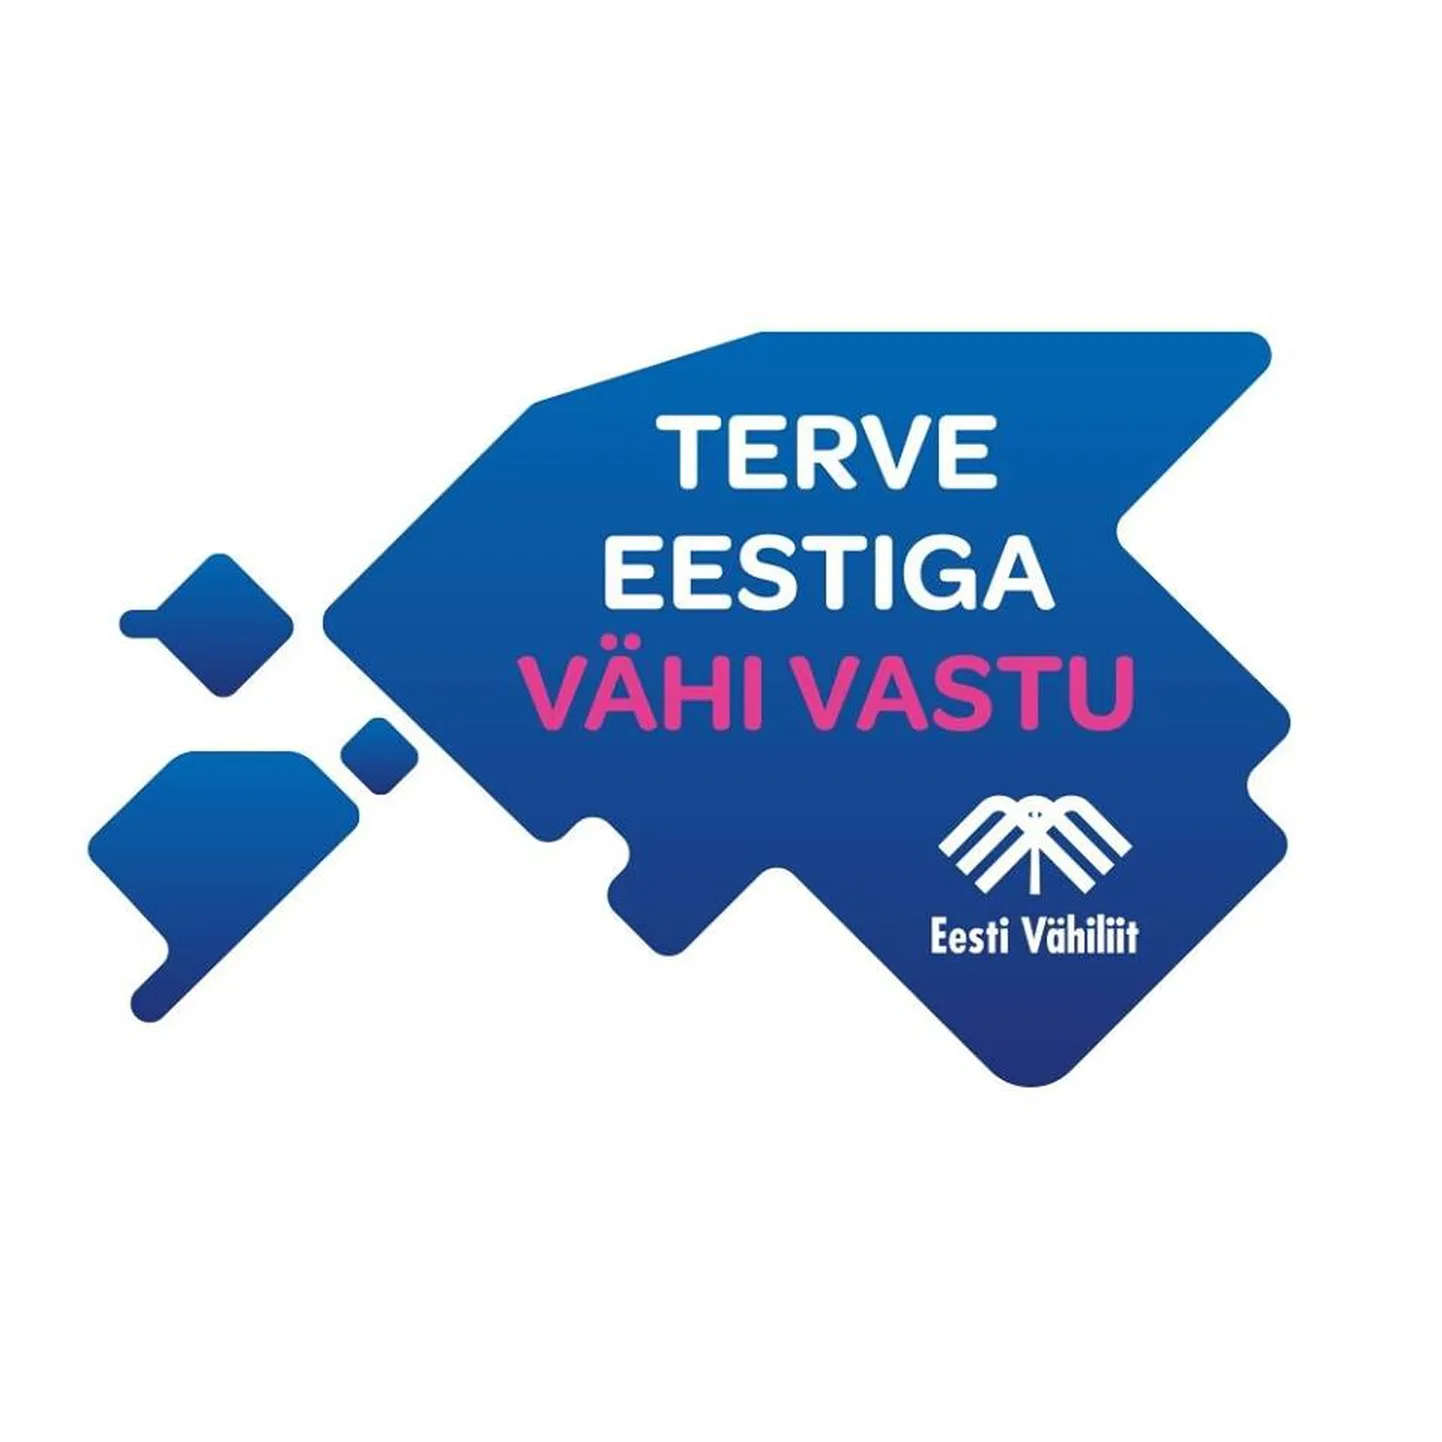 Новый логотип кампании Эстонского ракового союза.